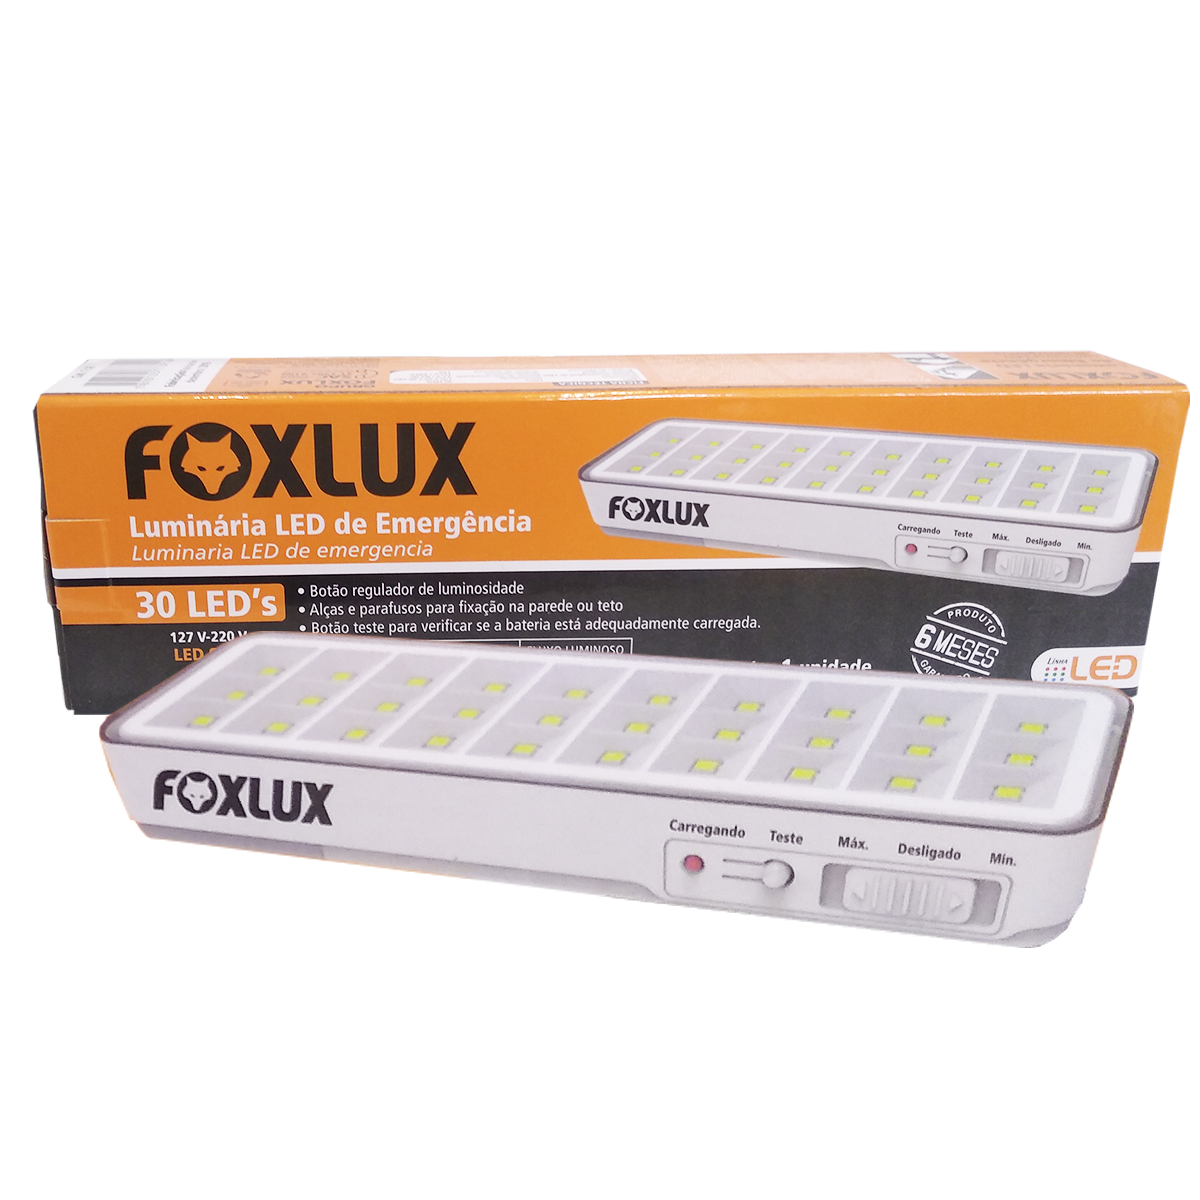 Luminária LED de Emergência Foxlux